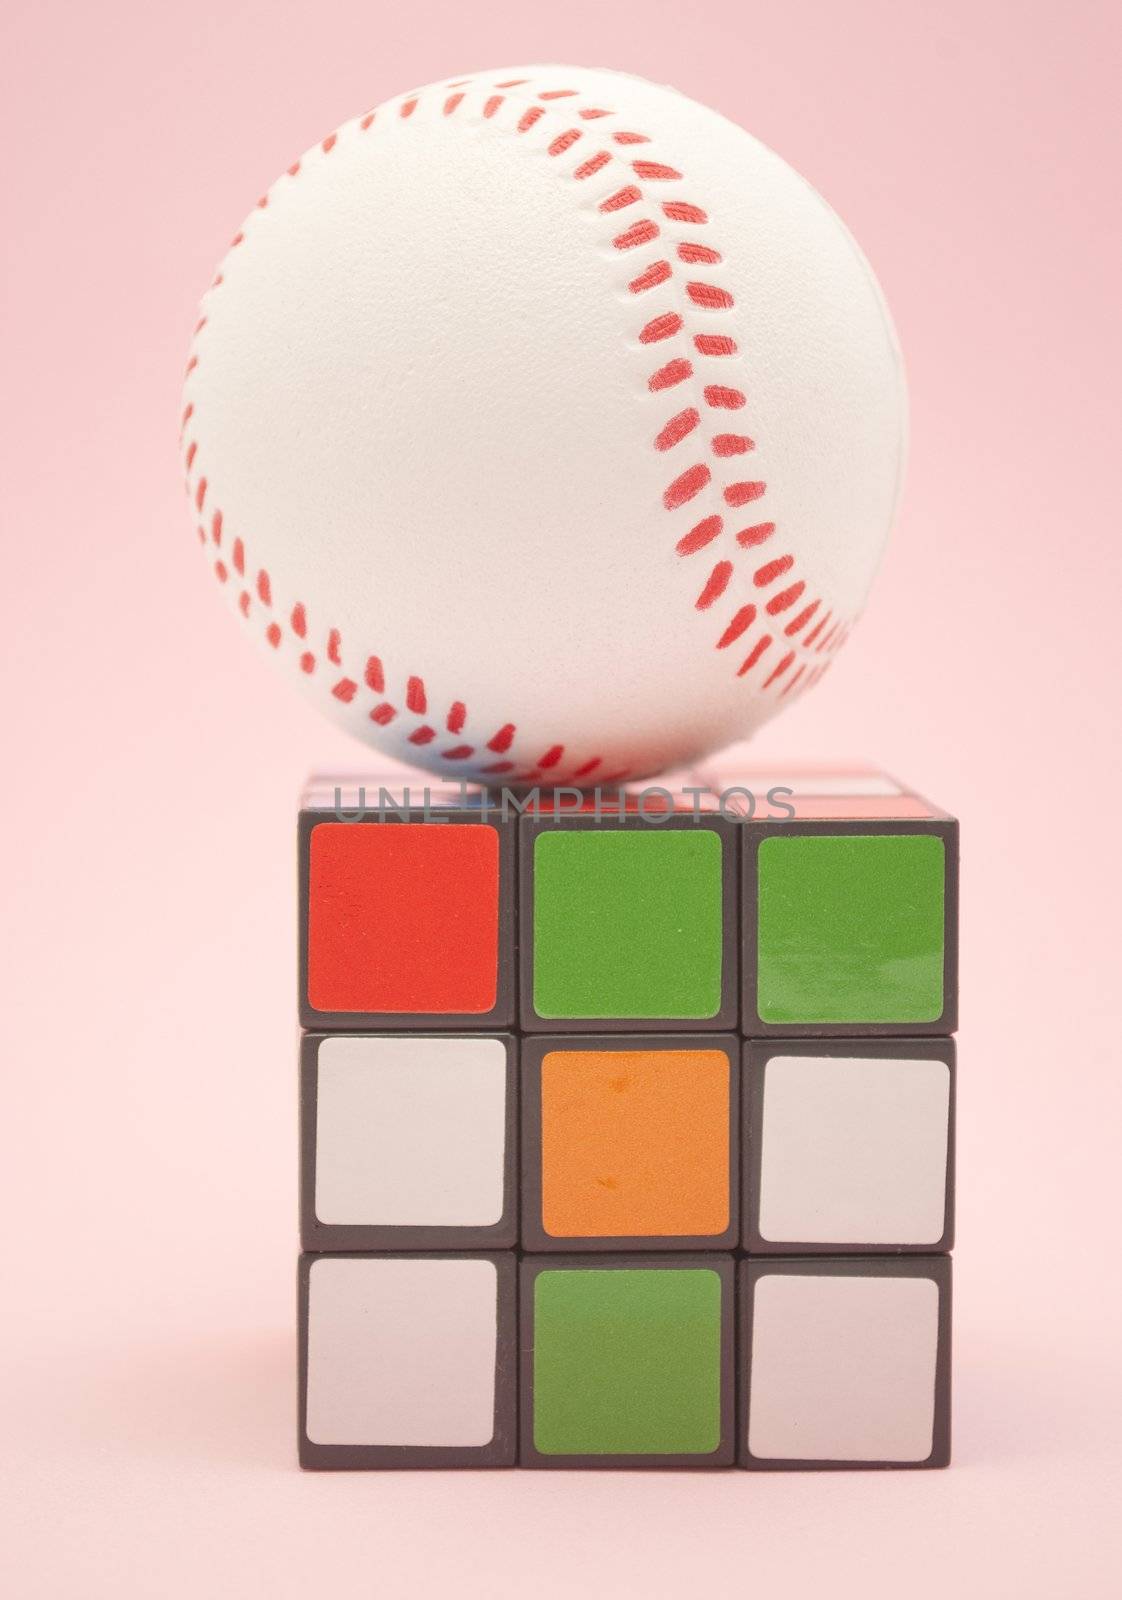 puzzles and baseball